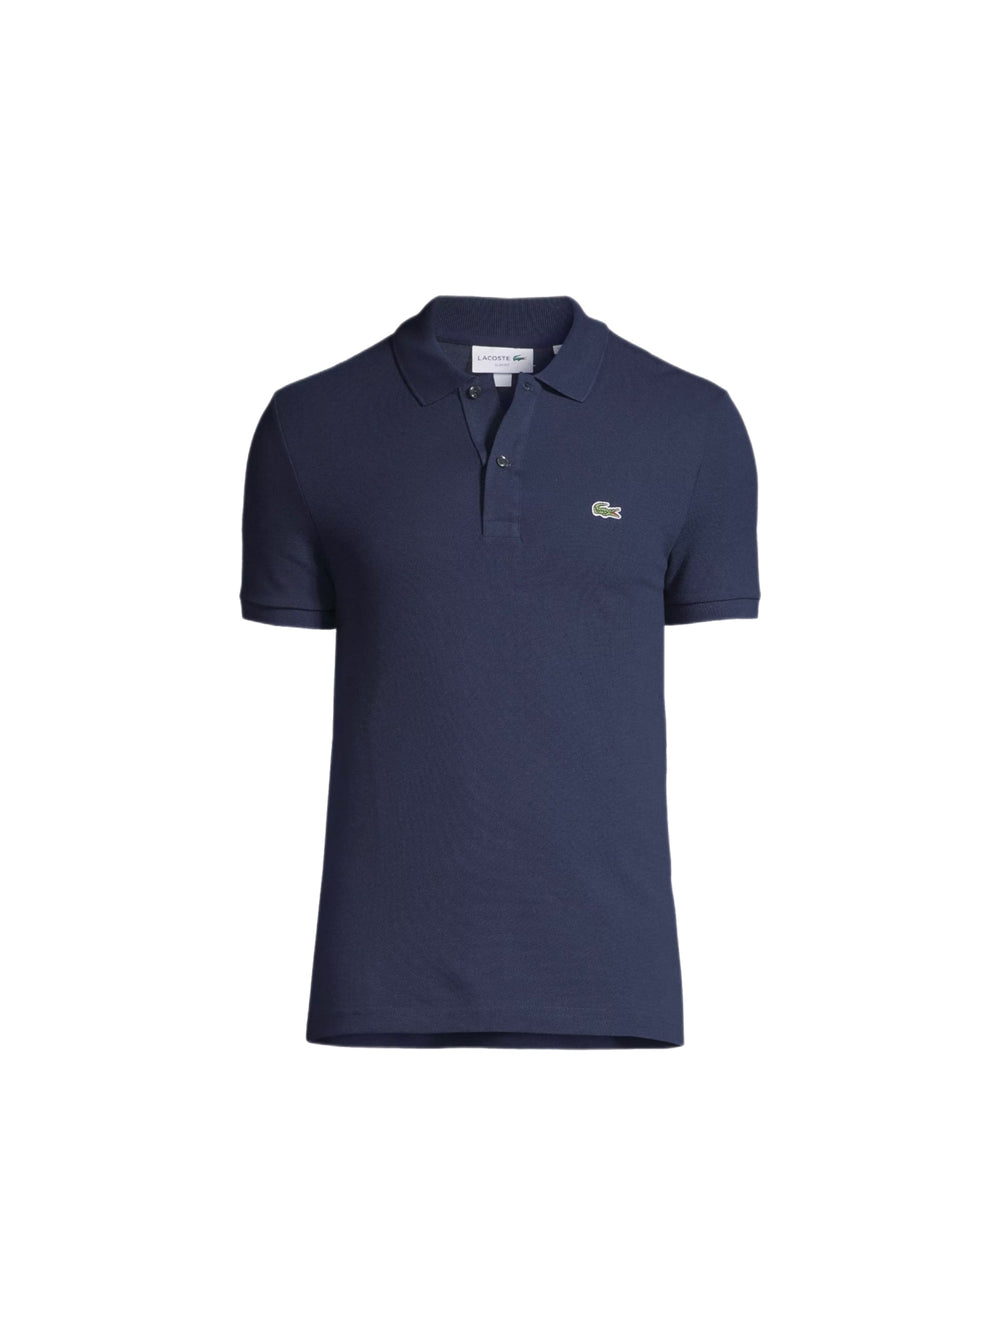 Men's Petit Pique Slim Fit Polo Shirt PH4012-51